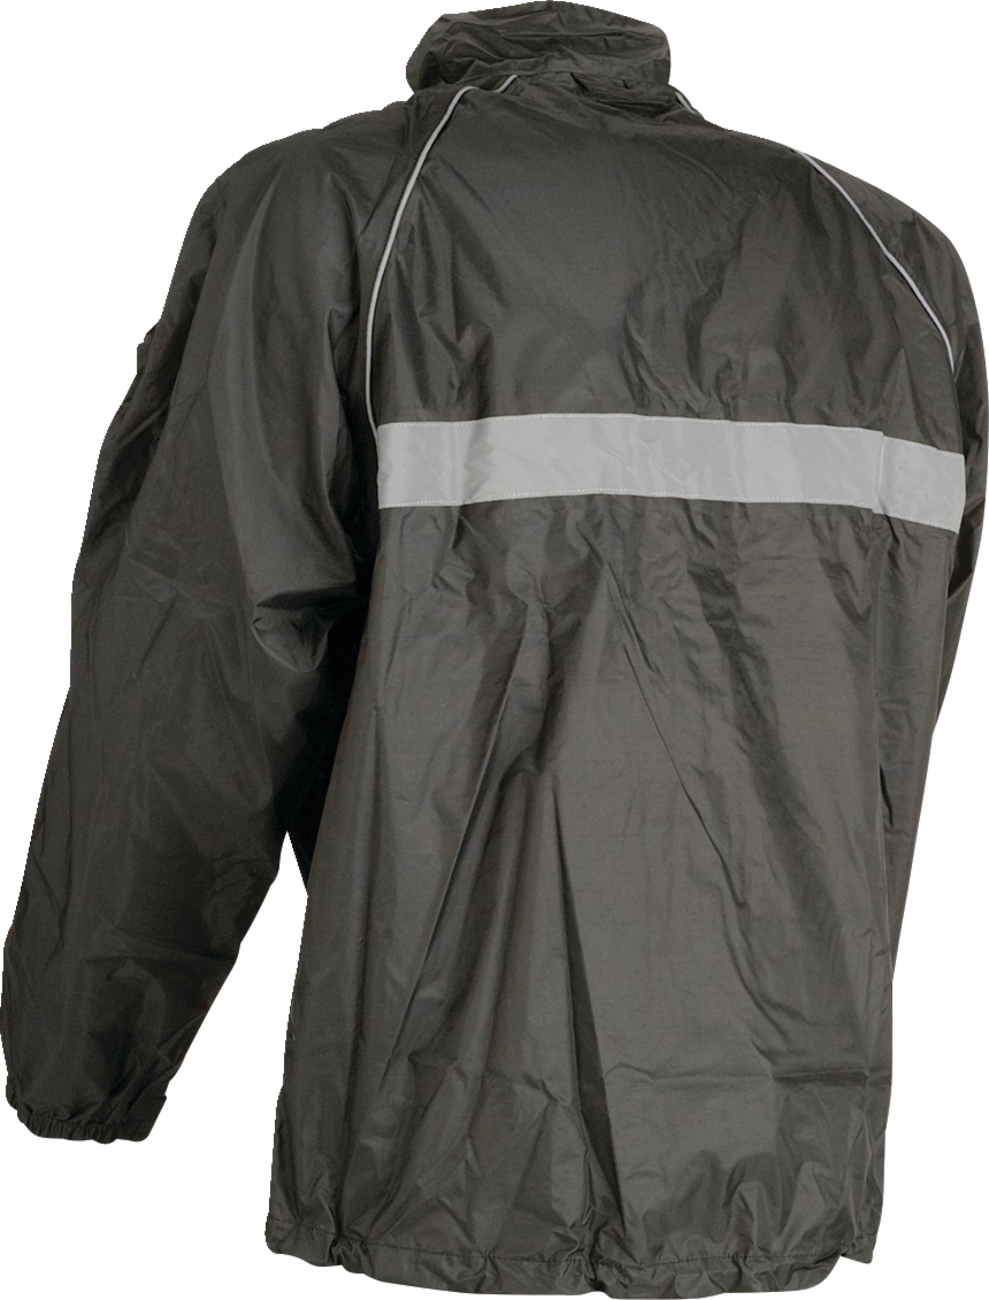 Z1R Waterproof Jacket - Black - 2XL 2854-0336